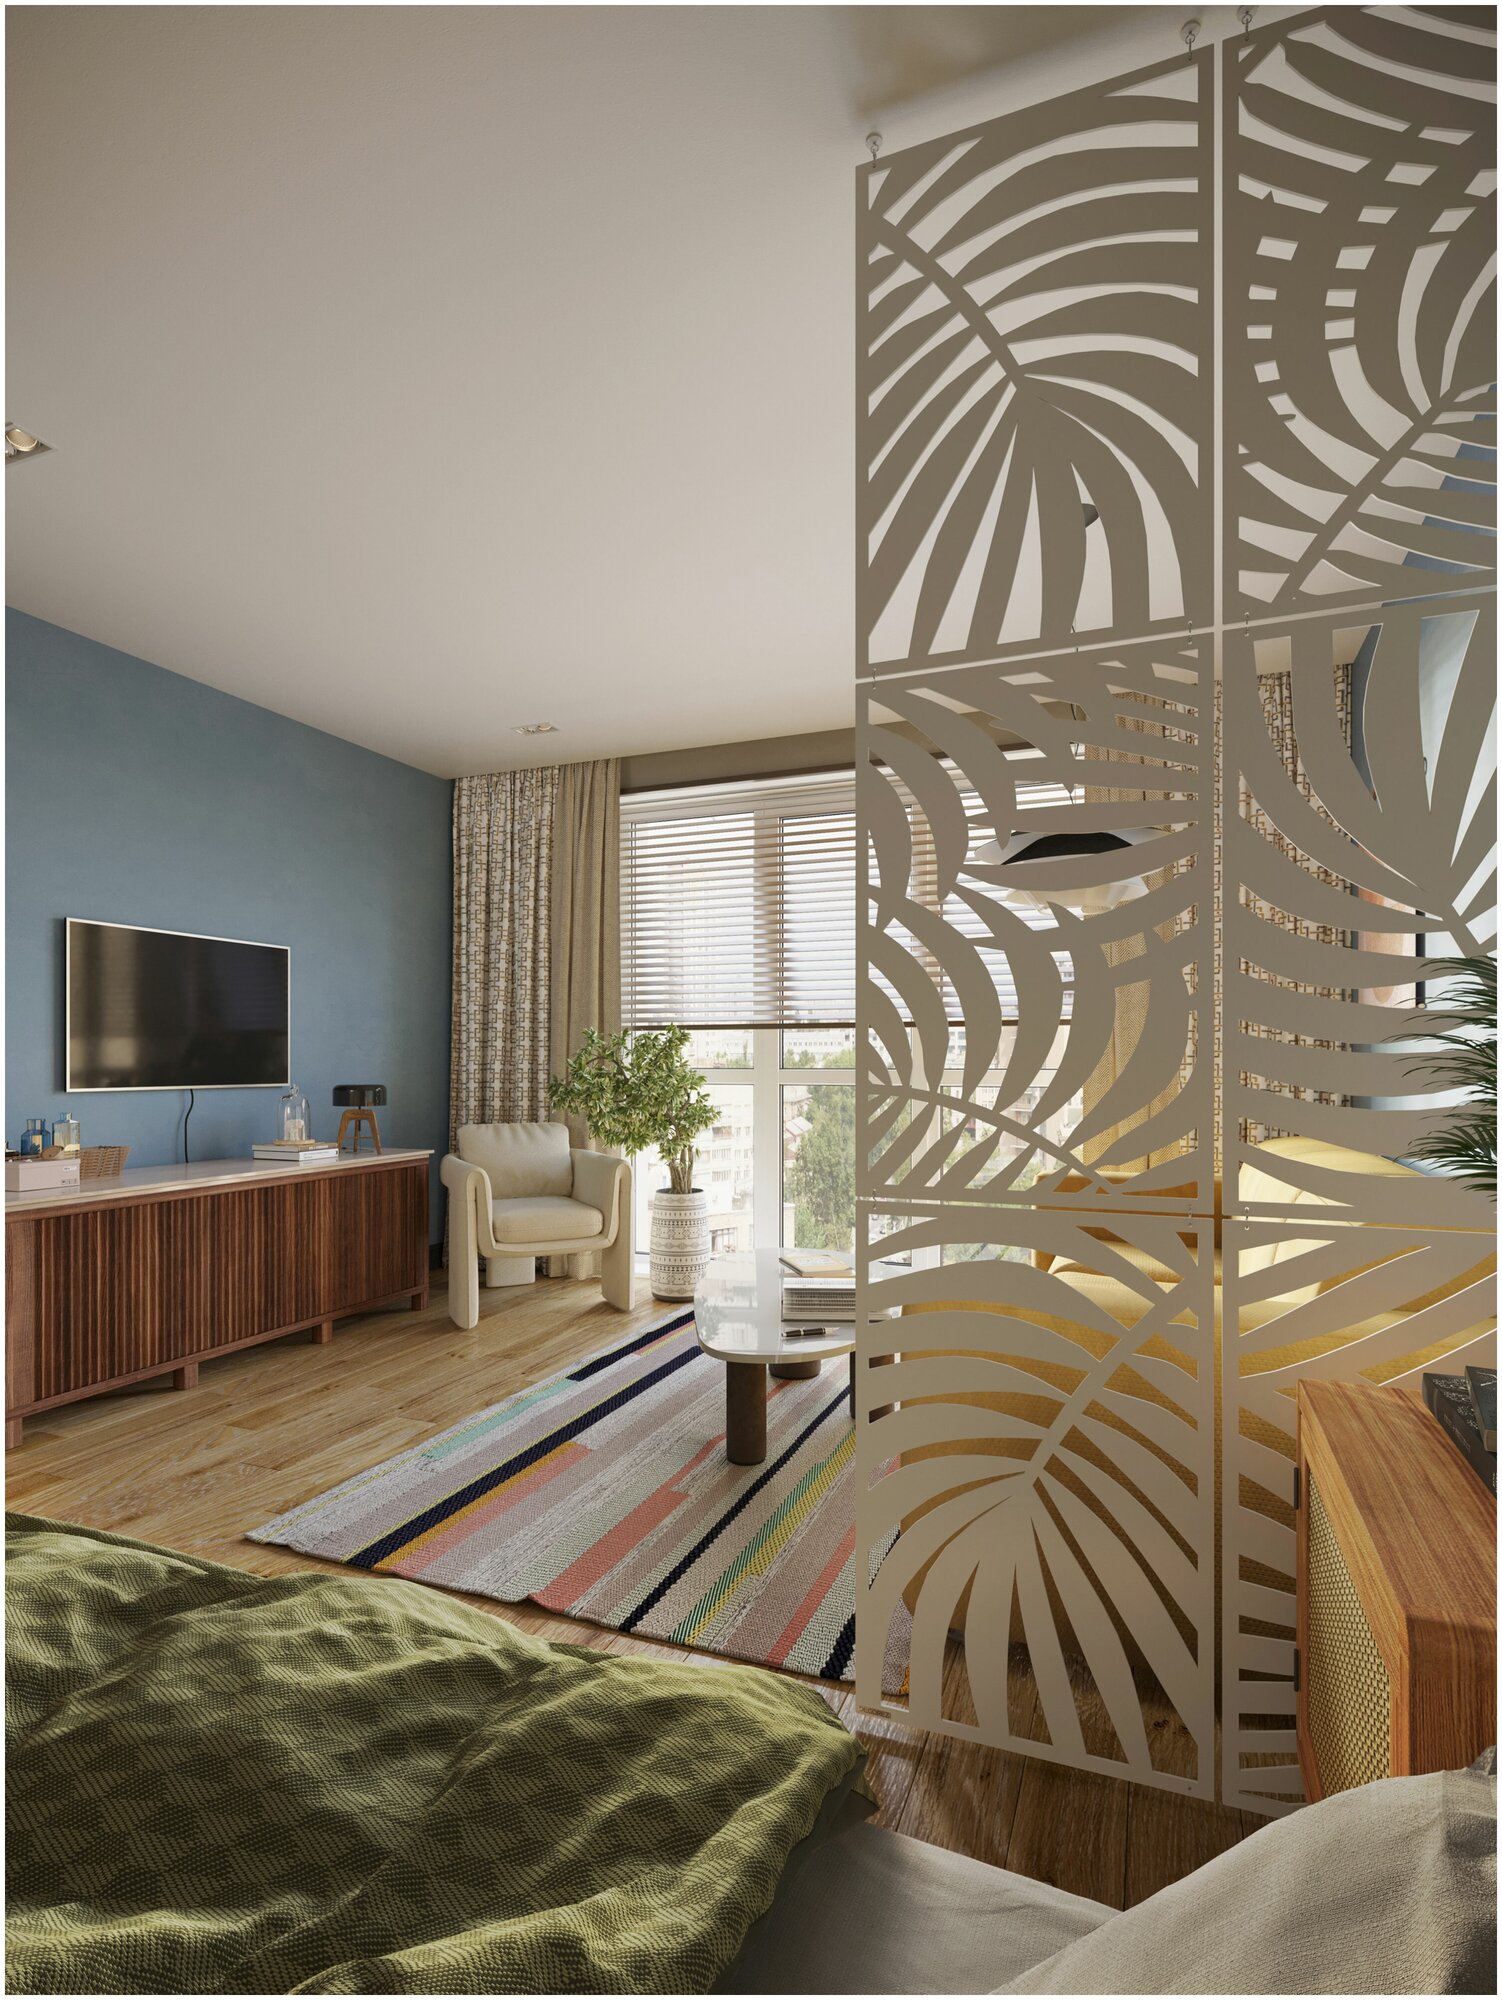 Ширма перегородка для комнаты дома интерьерная декоративная модульная для зонирования пространства - фотография № 7